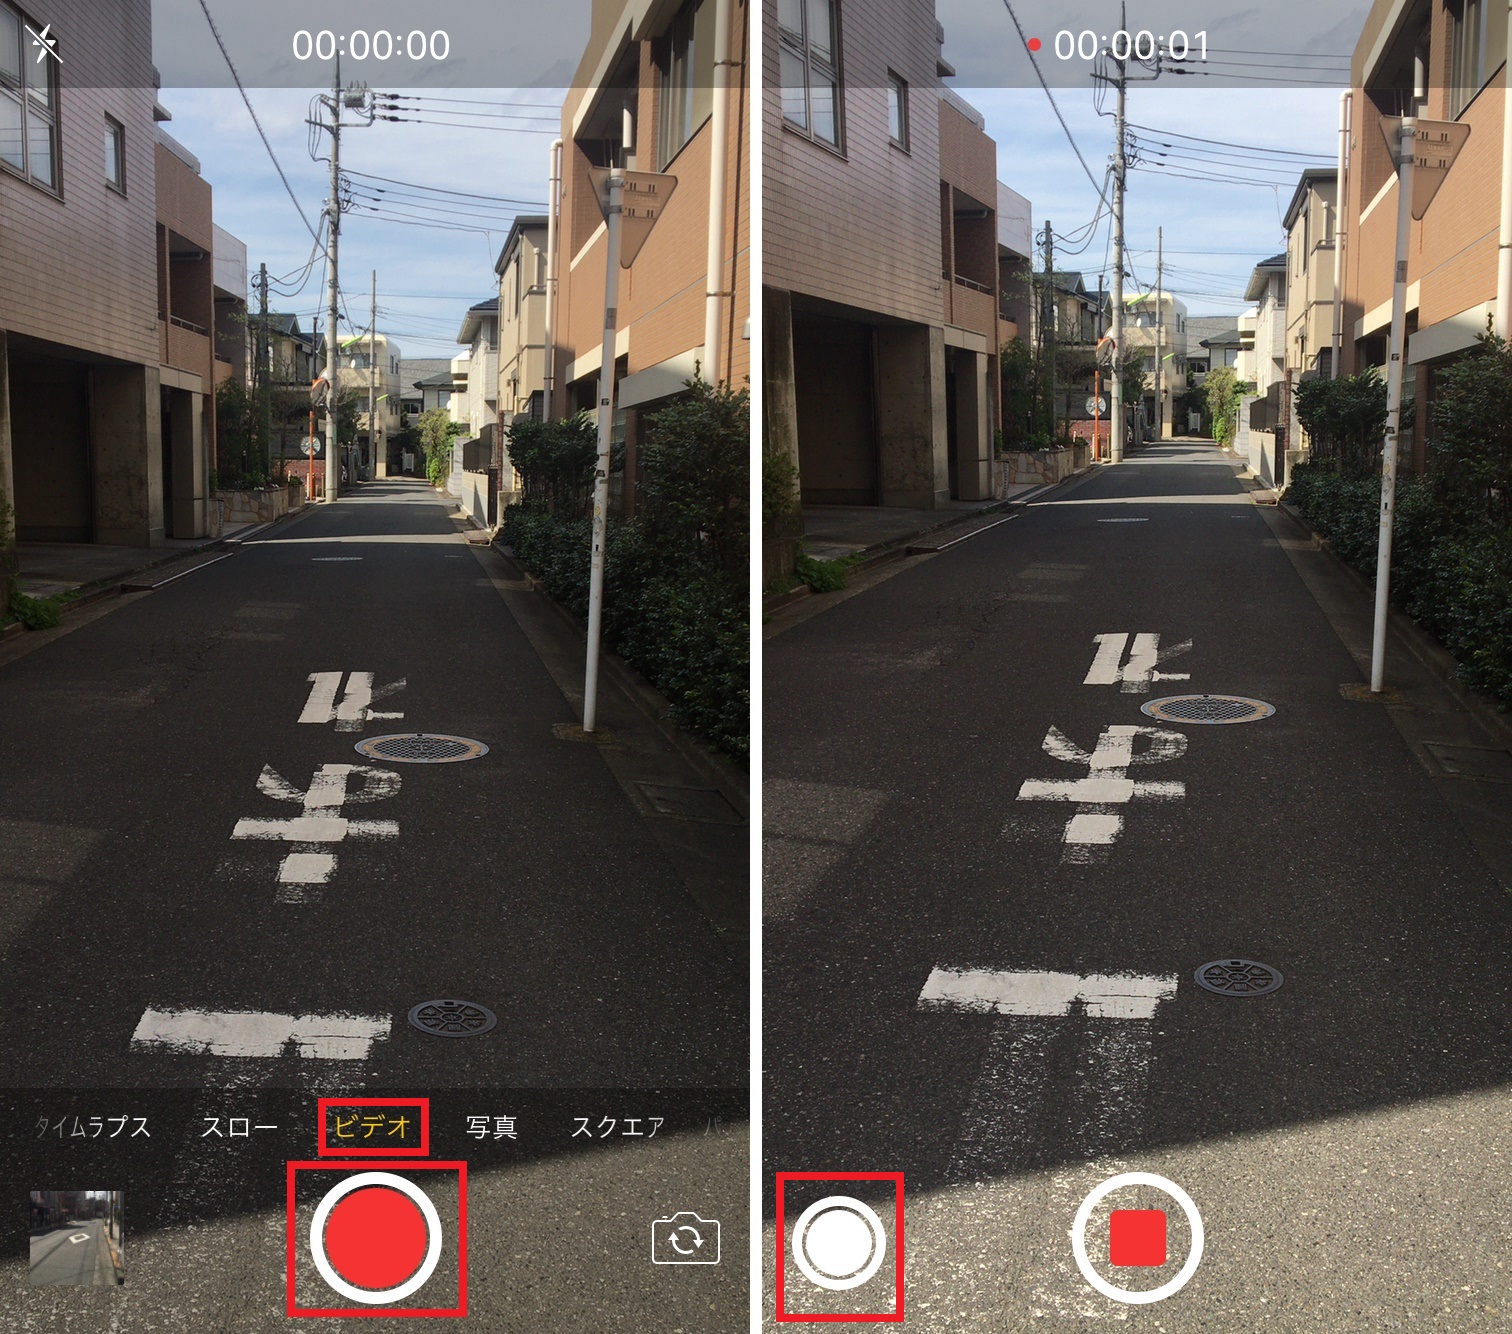 Iphoneで動画撮影中に写真も撮る方法 これでシャッターチャンスを逃さない Iphone Tips Engadget 日本版